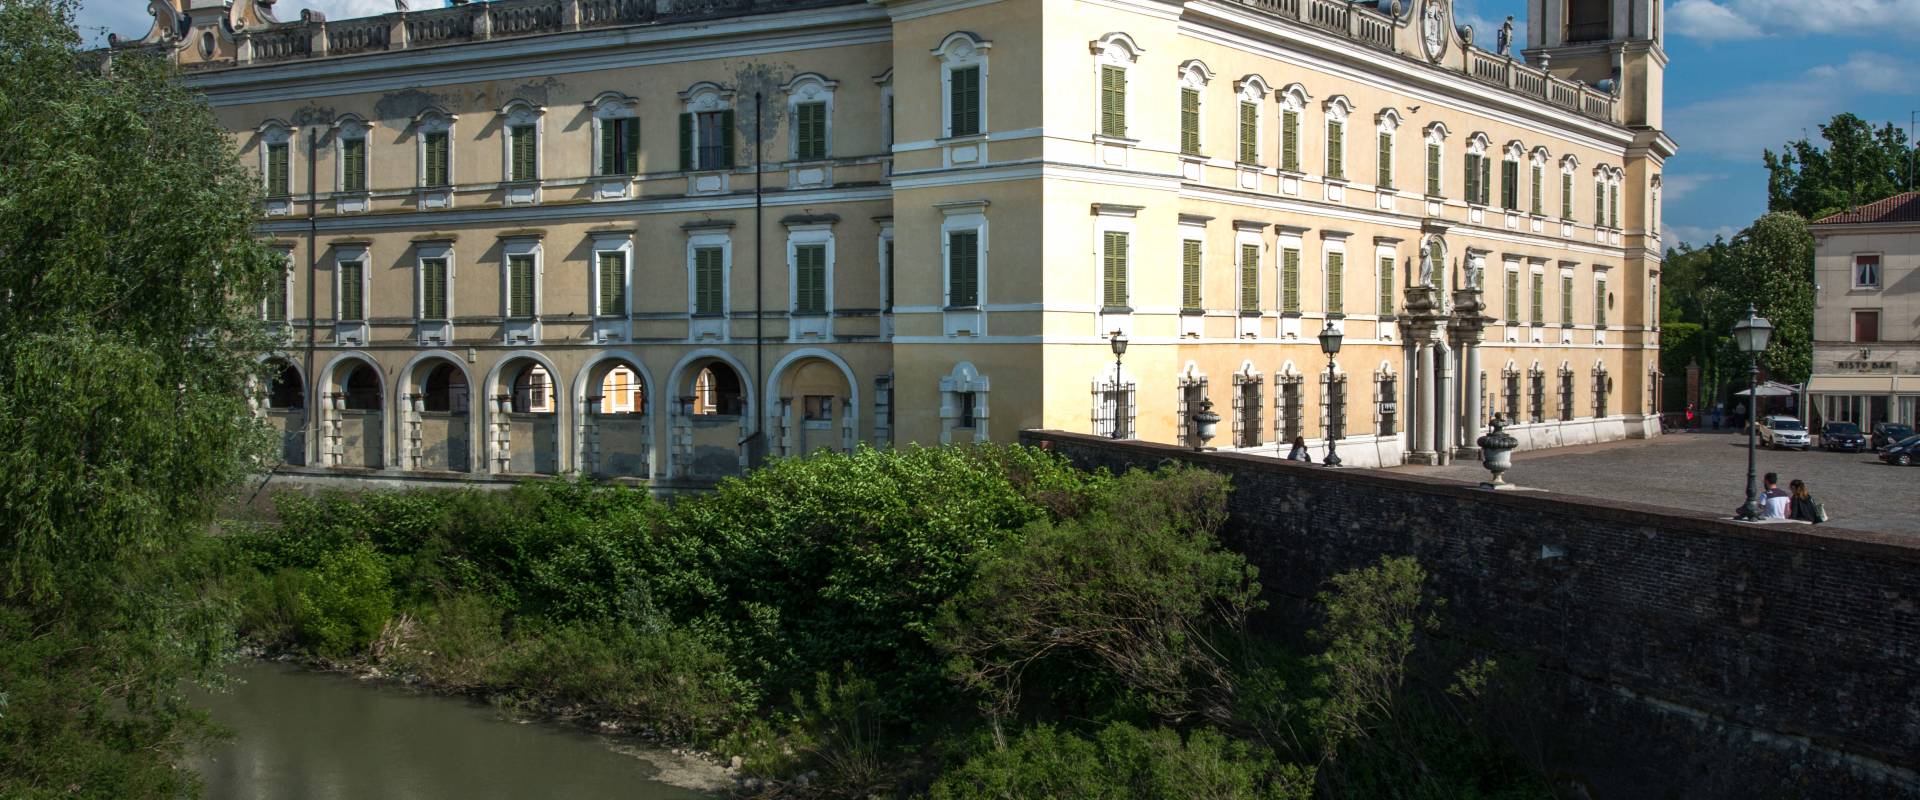 Colorno Palazzo Ducale foto di Wwikiwalter